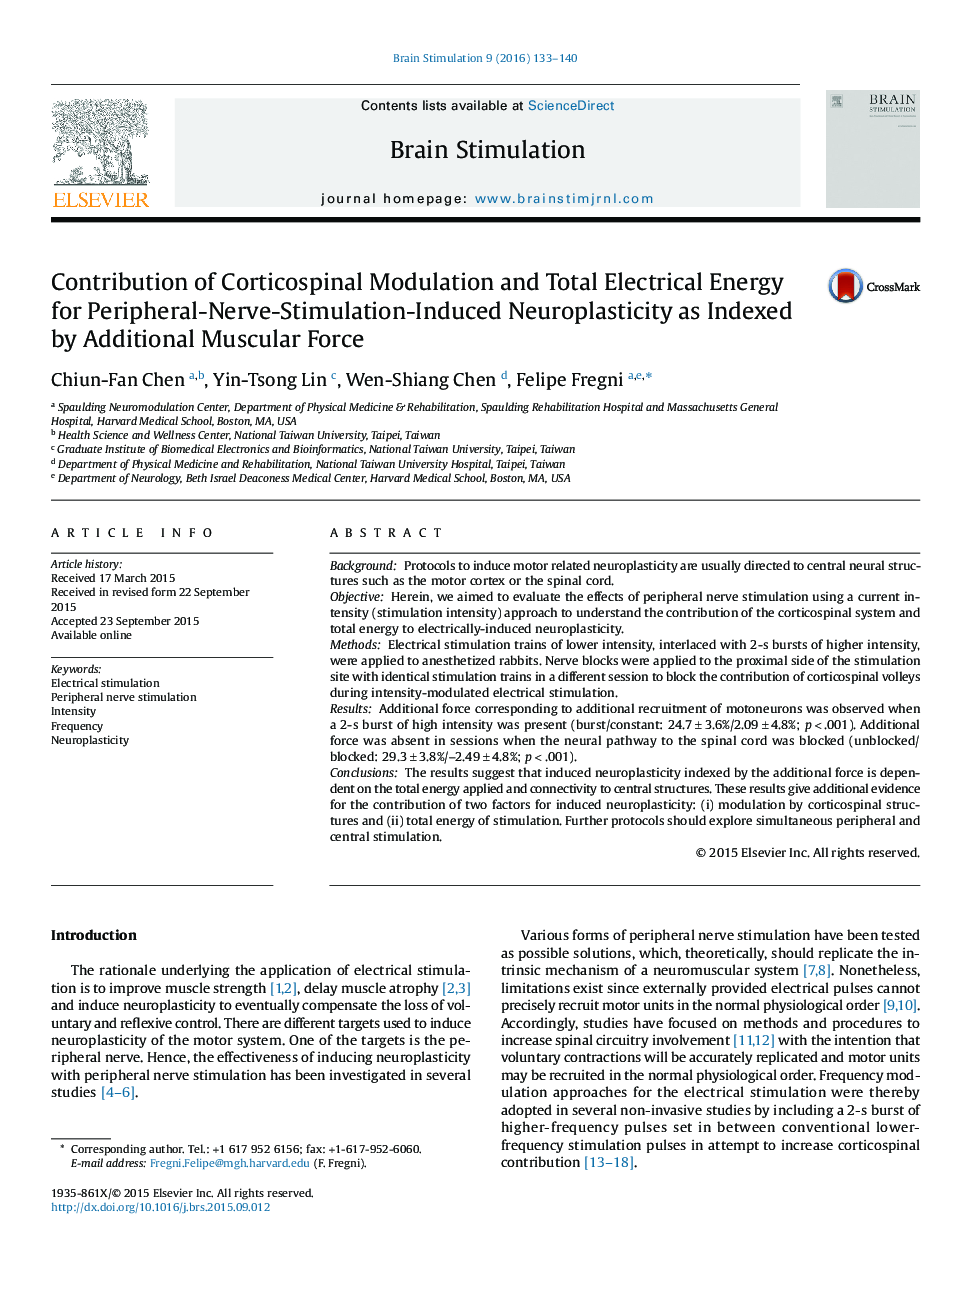 مشارکت در مدولاسیون کورتیکاسپنال و انرژی الکتریکی کامل برای نوروپلاستی ناشی از تحریک ناشی از عصب محیطی به عنوان شاخصی از نیروی اضافی عضلانی 